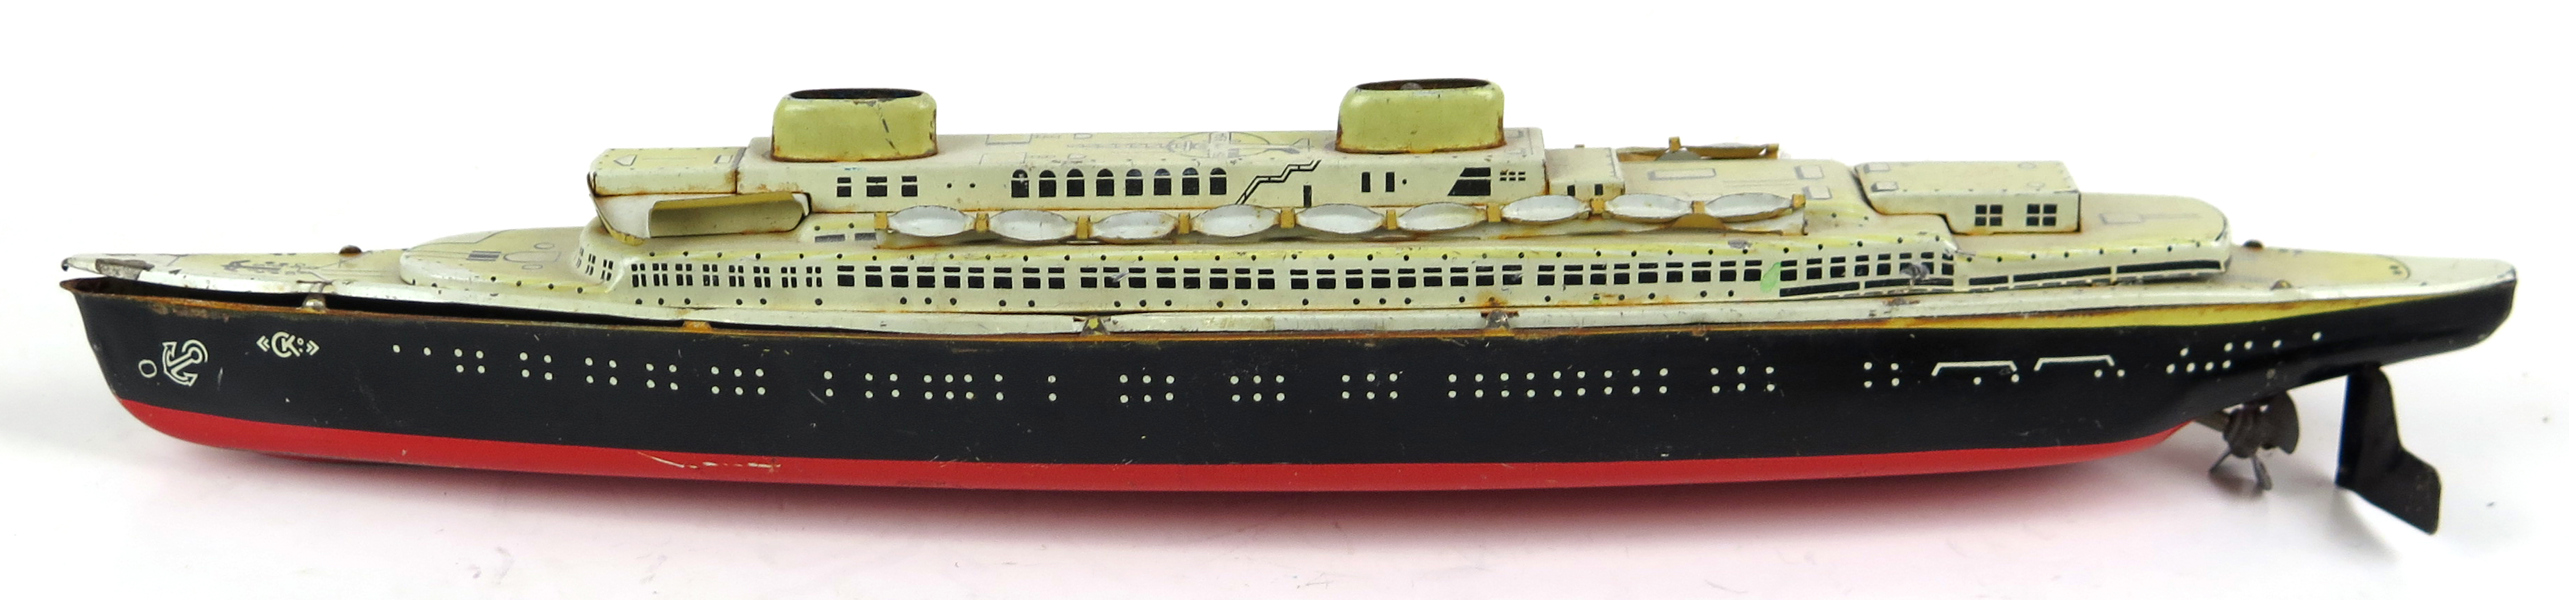 Fartygsmodell, litograferad plåt, CKO Kellermann, 1900-talets mitt, atlantångare, "Atlantic" modellnummer 354, l 35 cm, bruksslitage_25371a_8daf87a0fe127b1_lg.jpeg